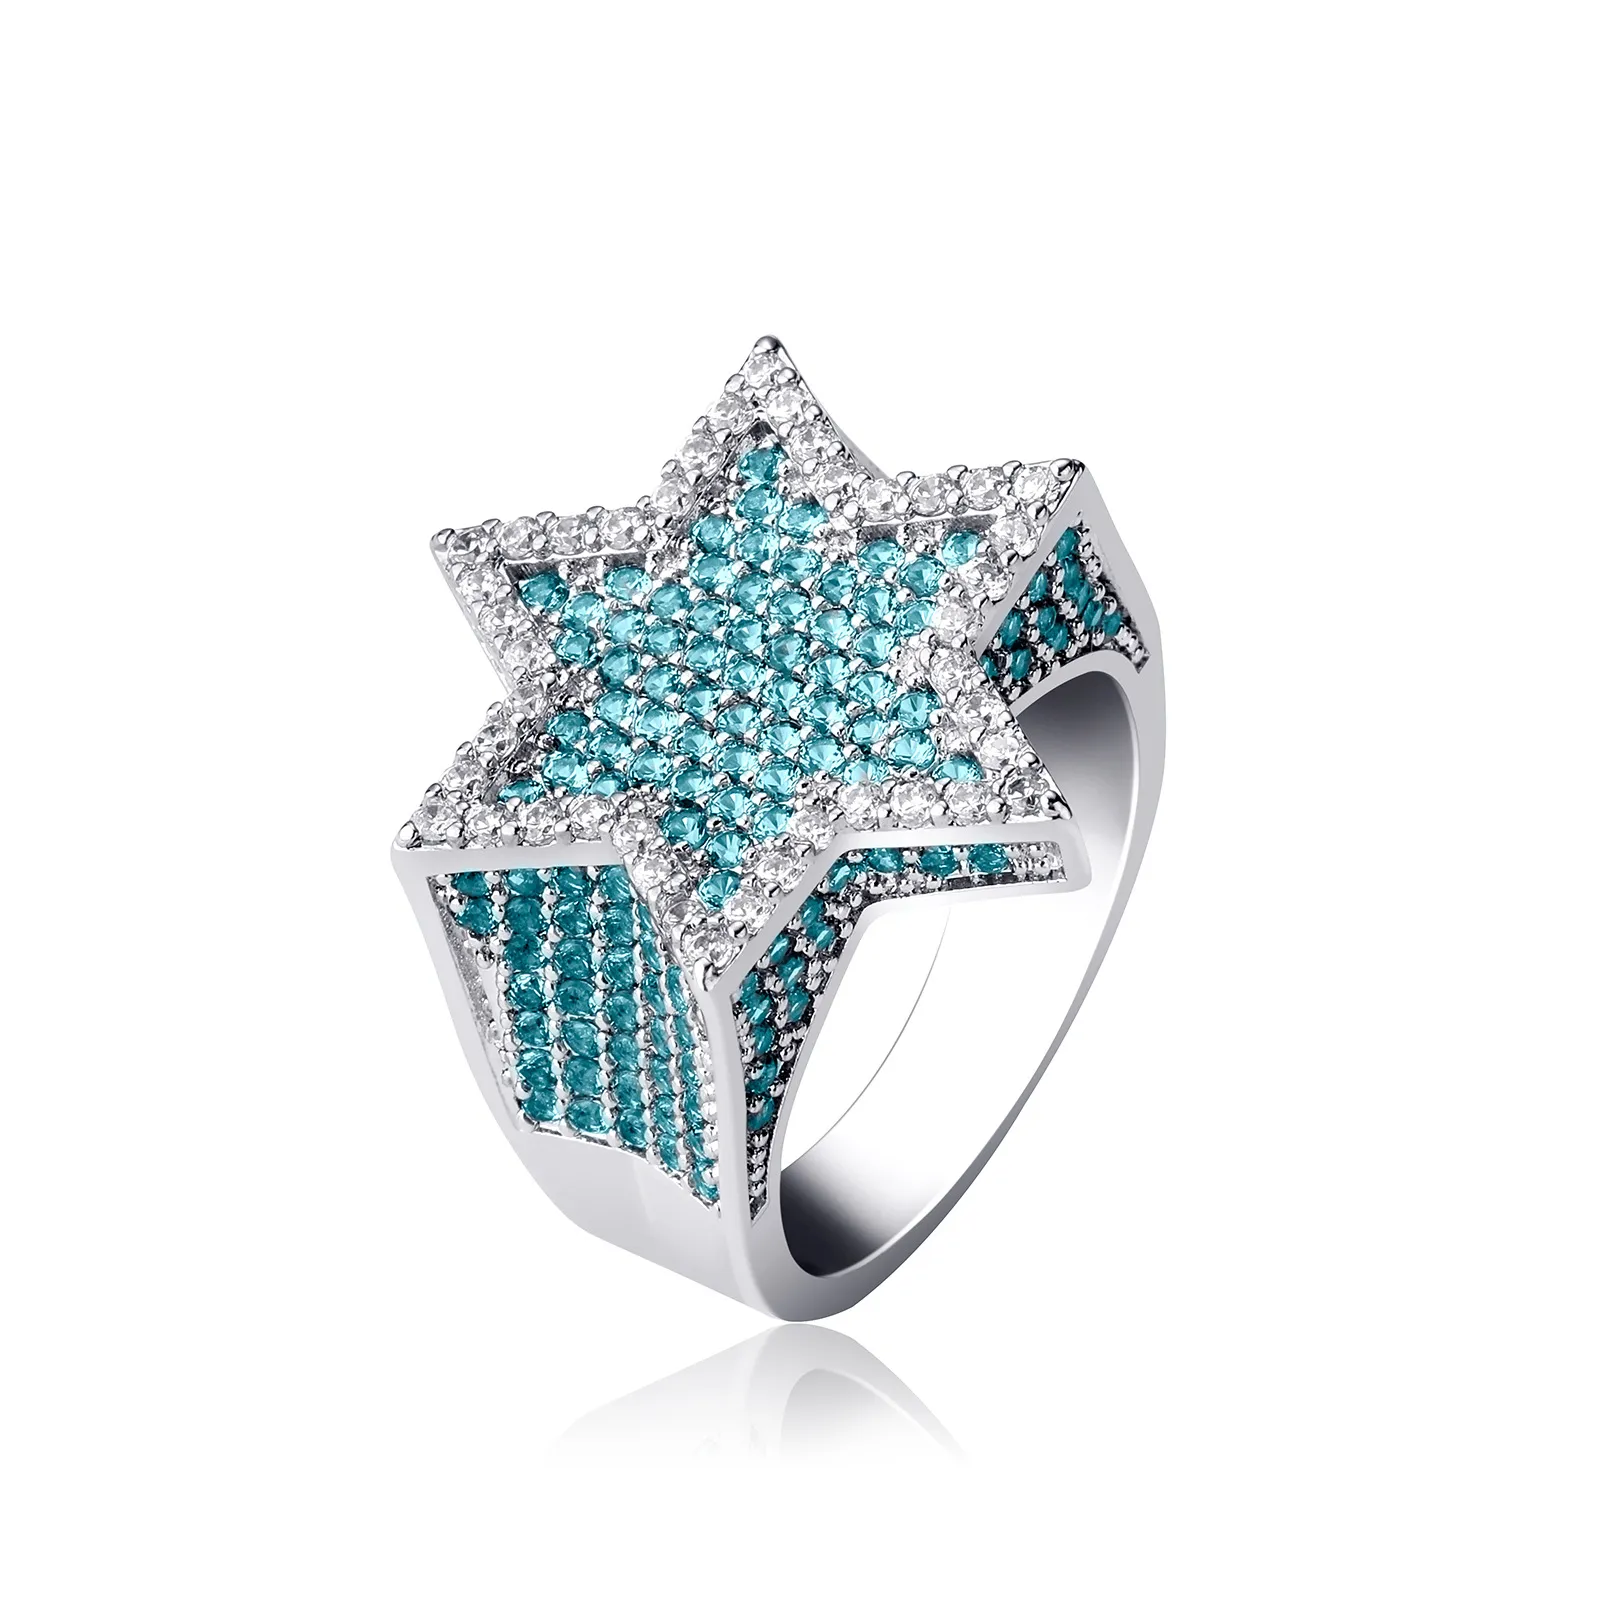 Neue Sechseck Stern Silber Farbe Blau Iced Out Kubikzircon Mit Seitlichen Steinen Ringe Mikro Gepflastert Diamant Hip Hop Schmuck für Gifts300W